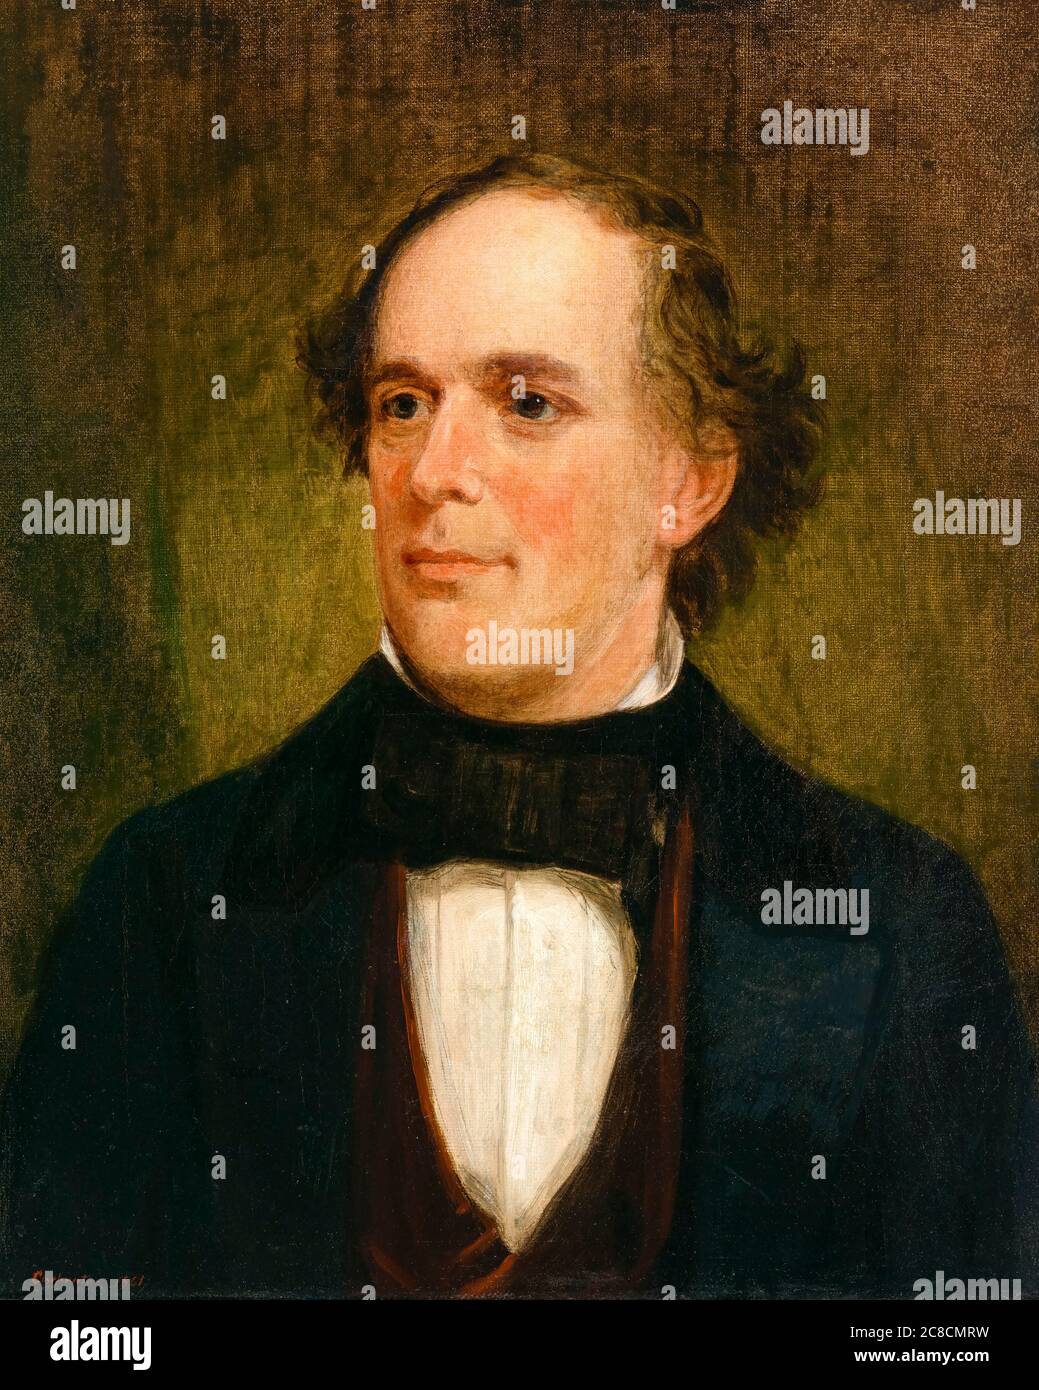 Lachs P Chase (1808-1873), amerikanischer Politiker, Anti-Sklaverei-Bewegung Abolitionist und politischer Reformer, Portraitmalerei von Francis Bichnell Carpenter, 1861 Stockfoto